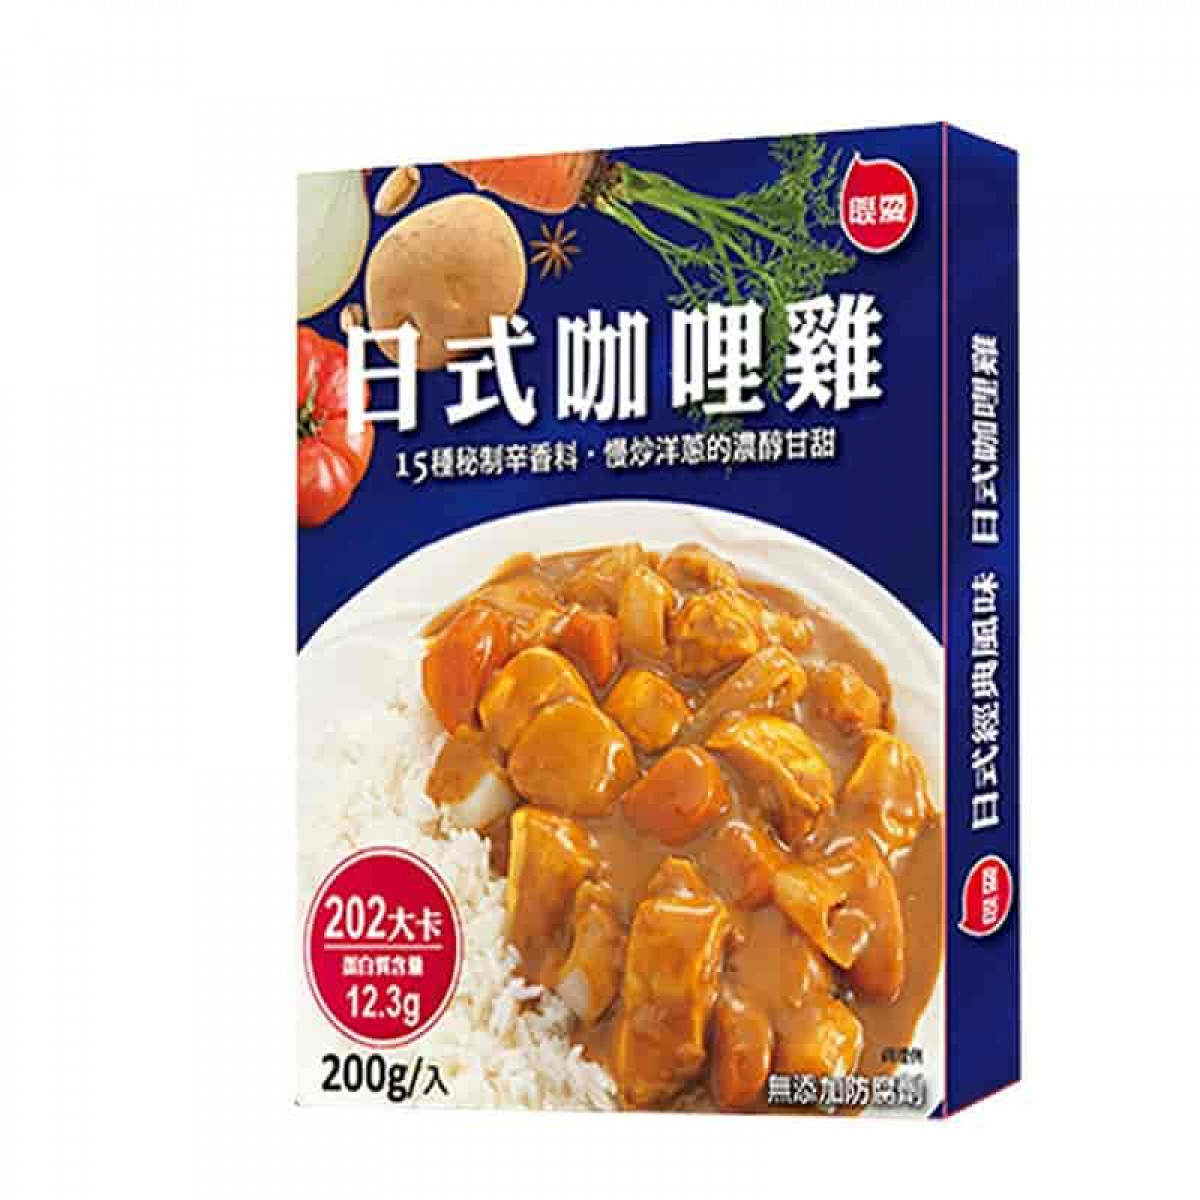 联夏-日式咖哩鸡